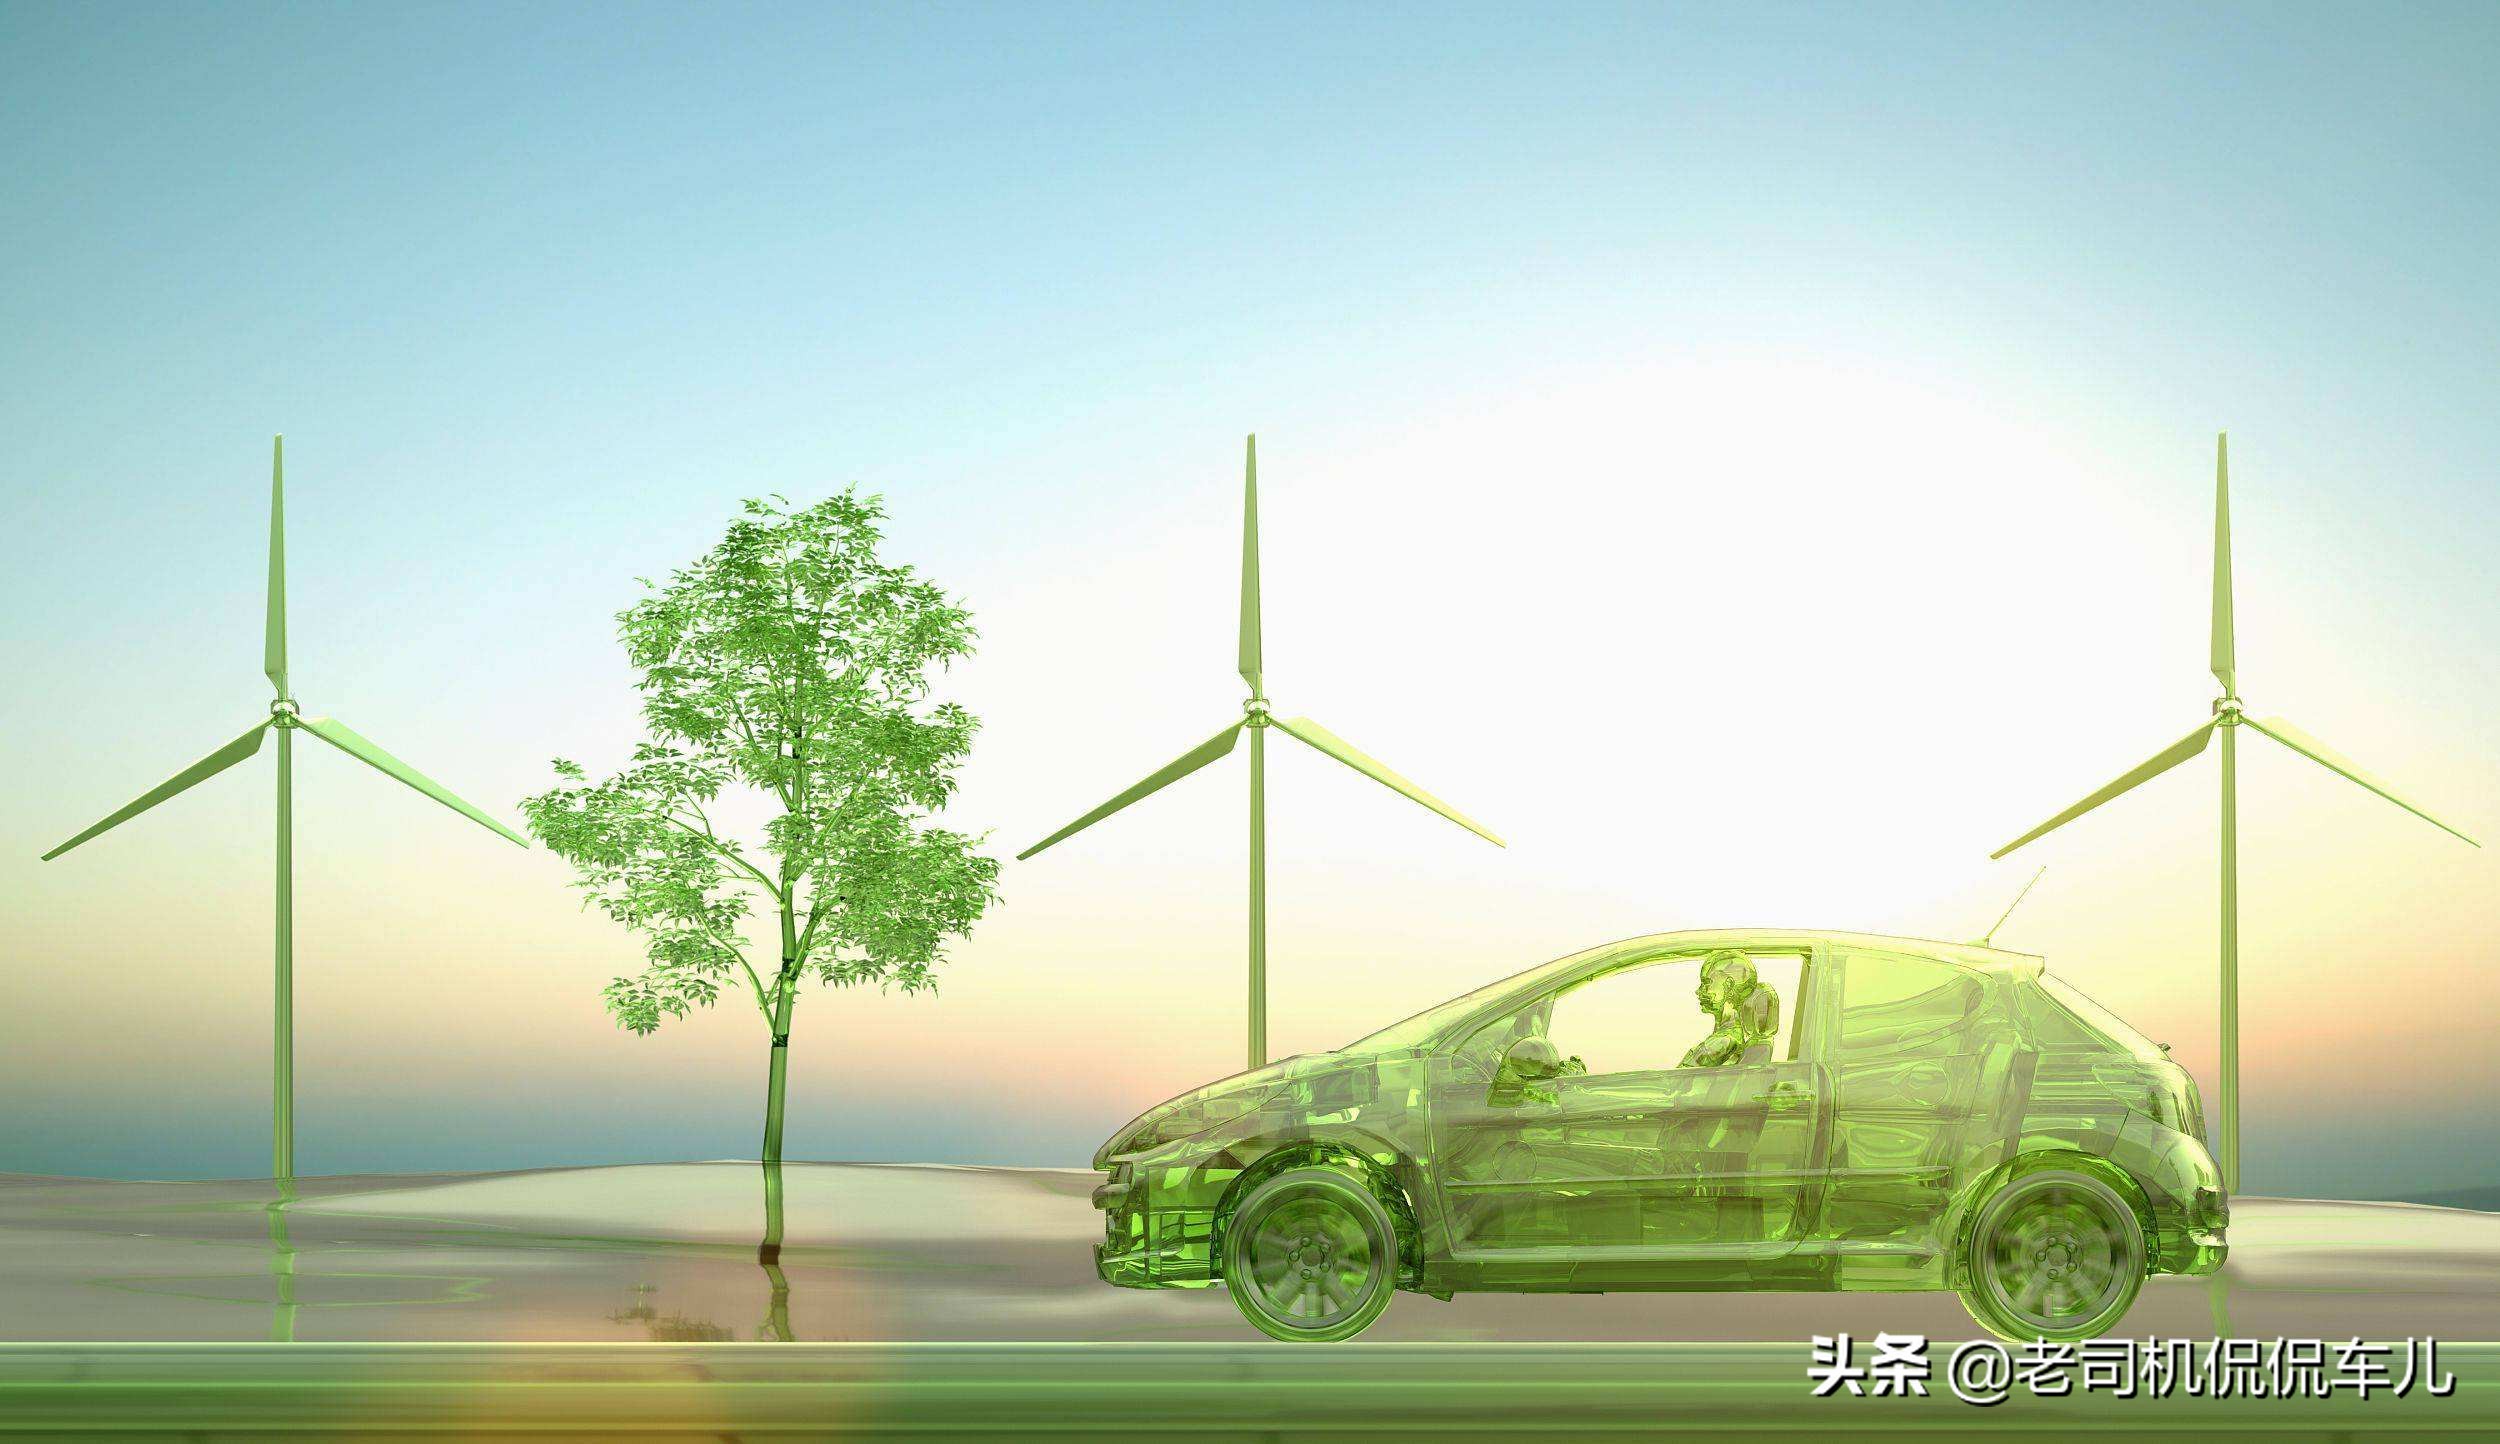 中国首款量产的氢燃料电池汽车,加氢3分钟续航700KM